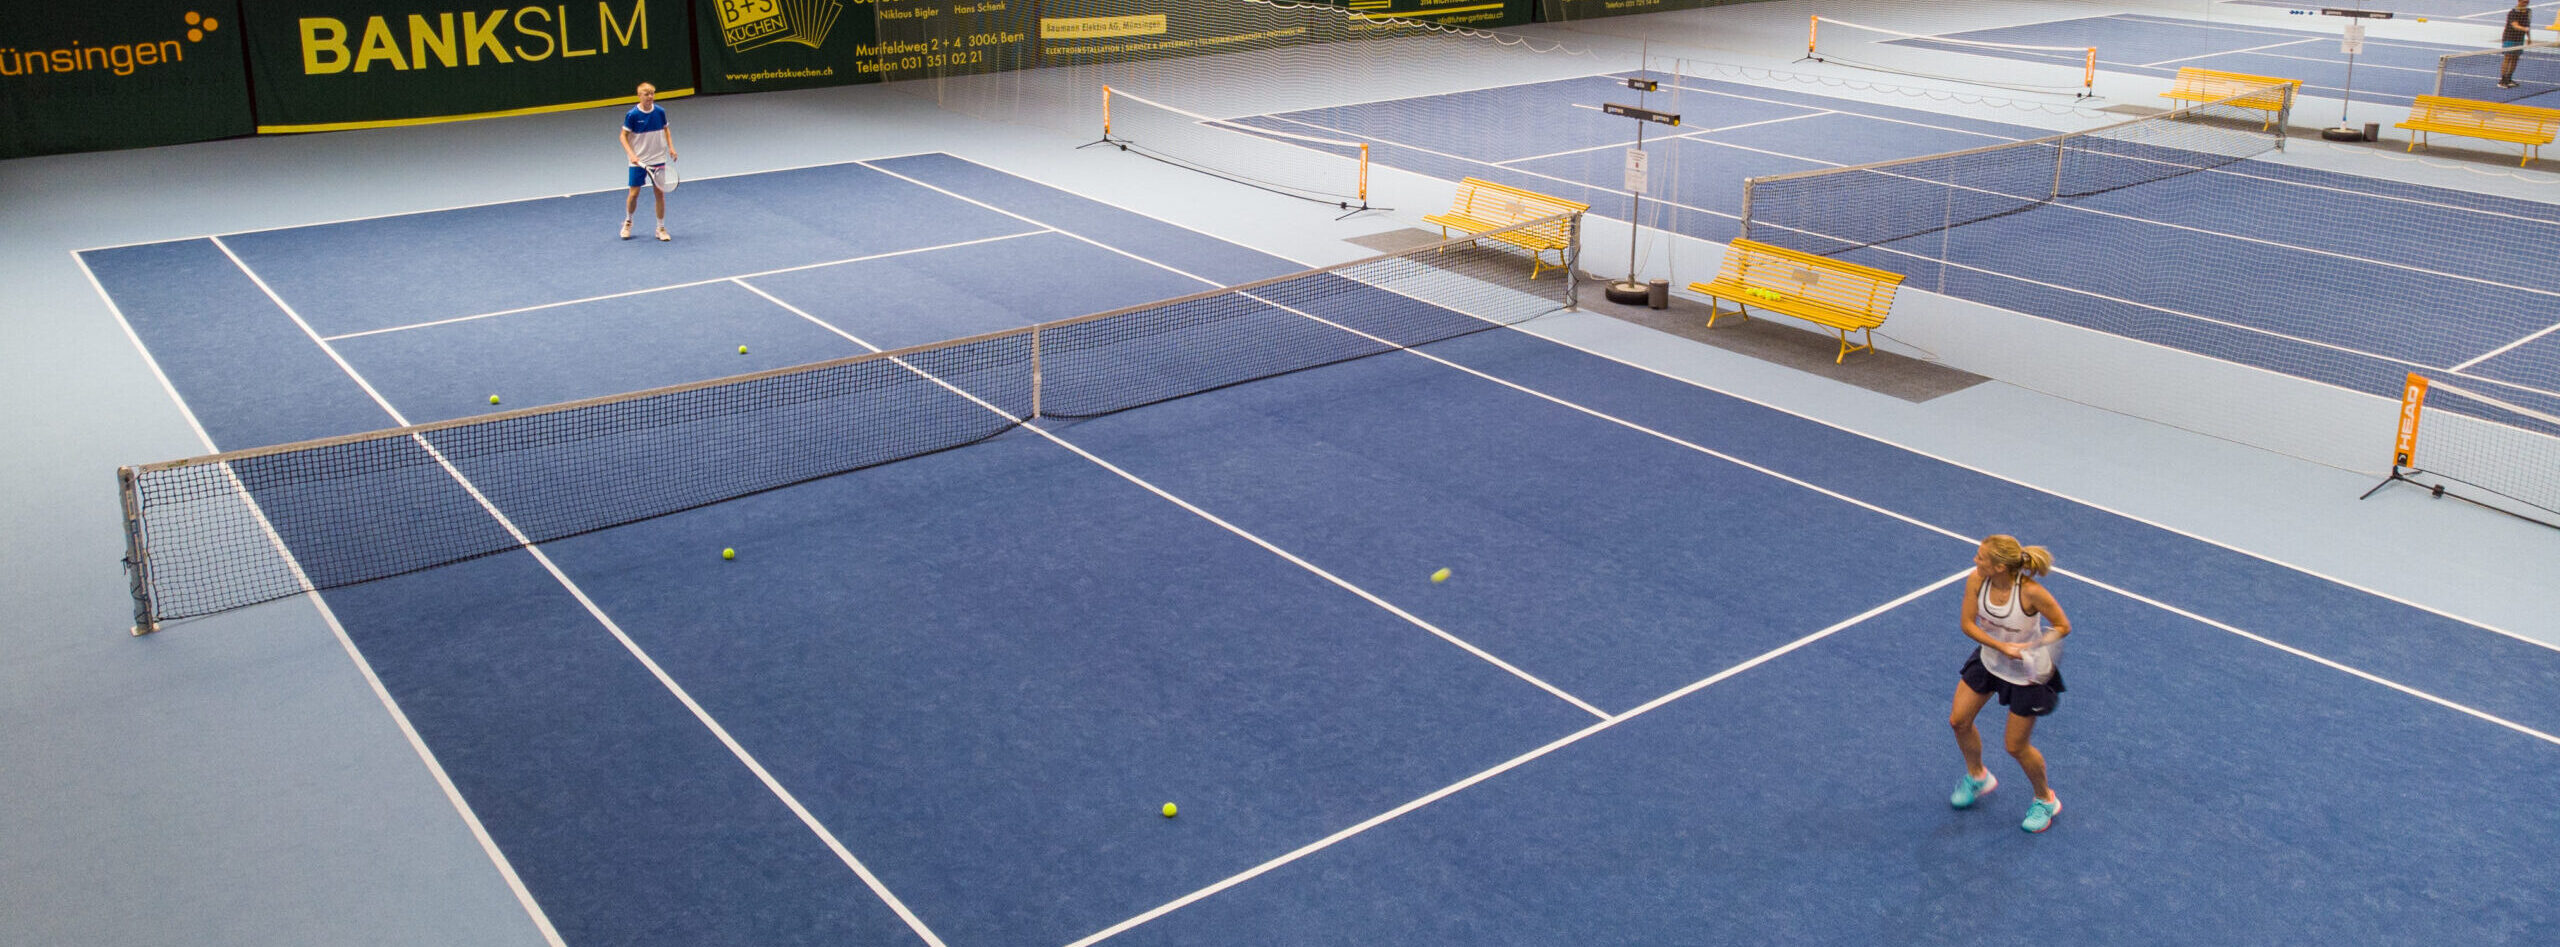 Tennishalle mit zwei Spieler